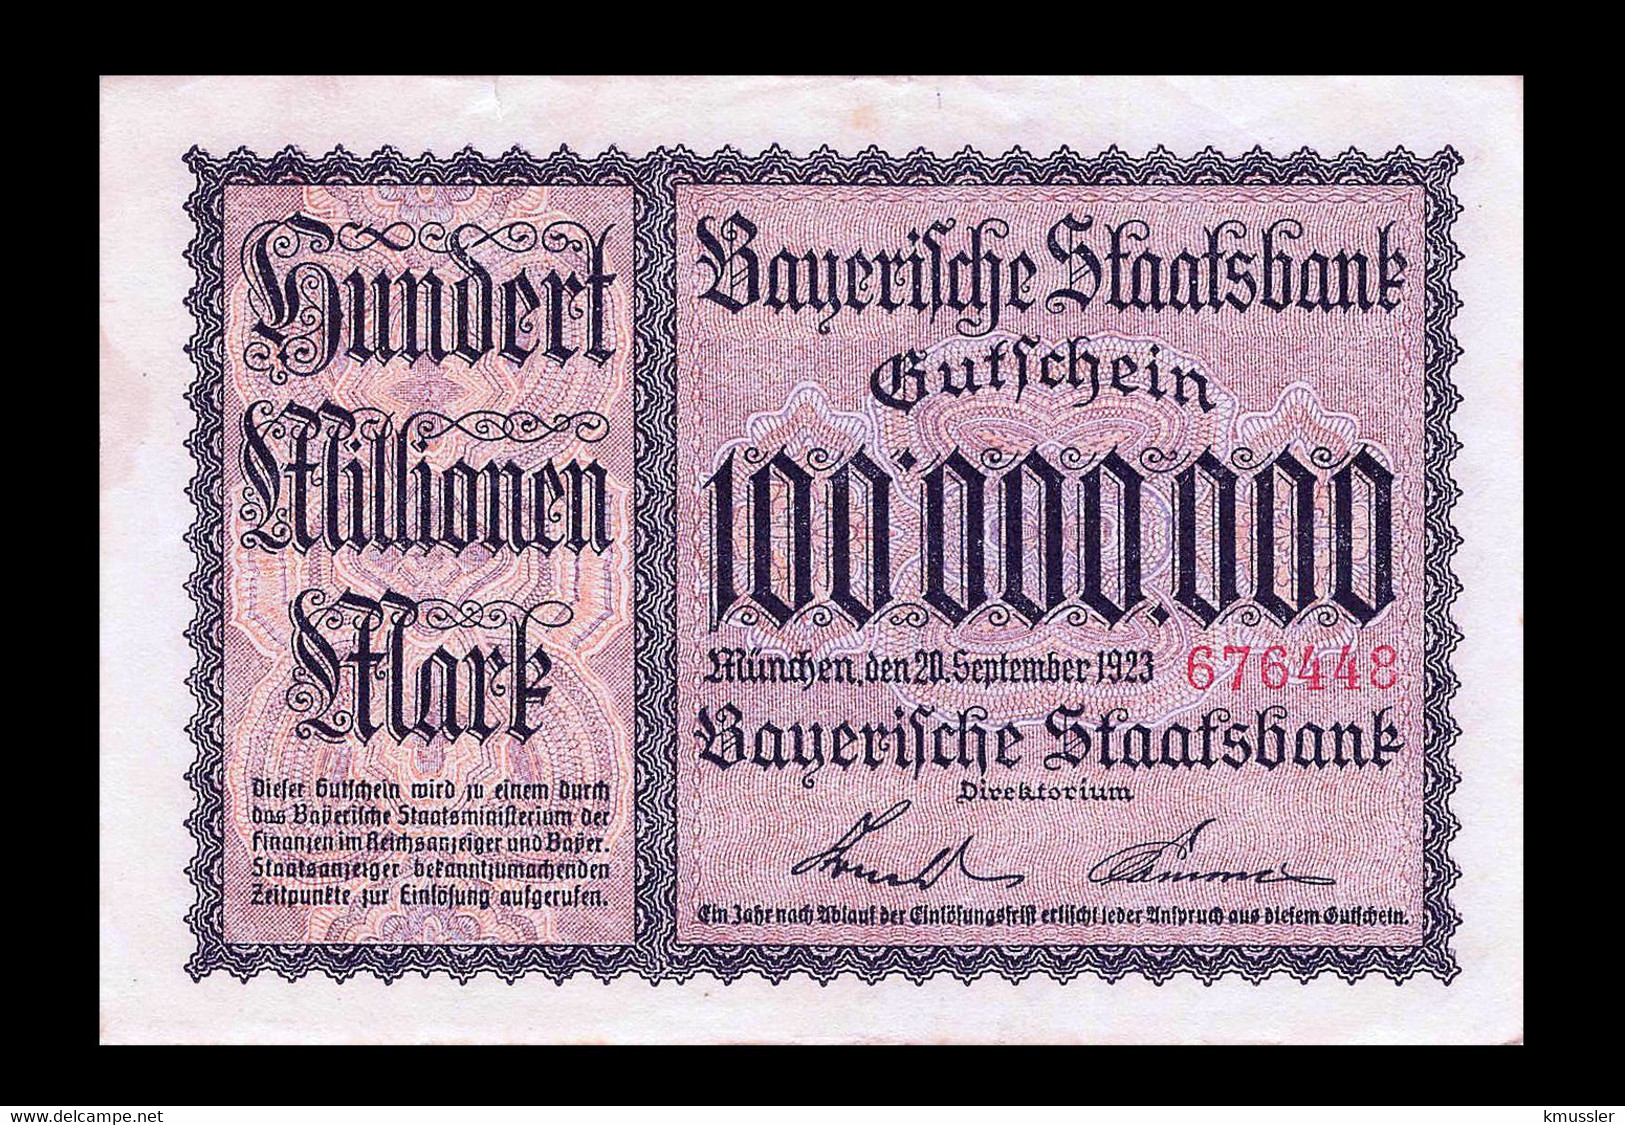 # # # Banknote Bayerische Staatsbank 100.000.000 Mark 1923 UNC # # # - Unclassified